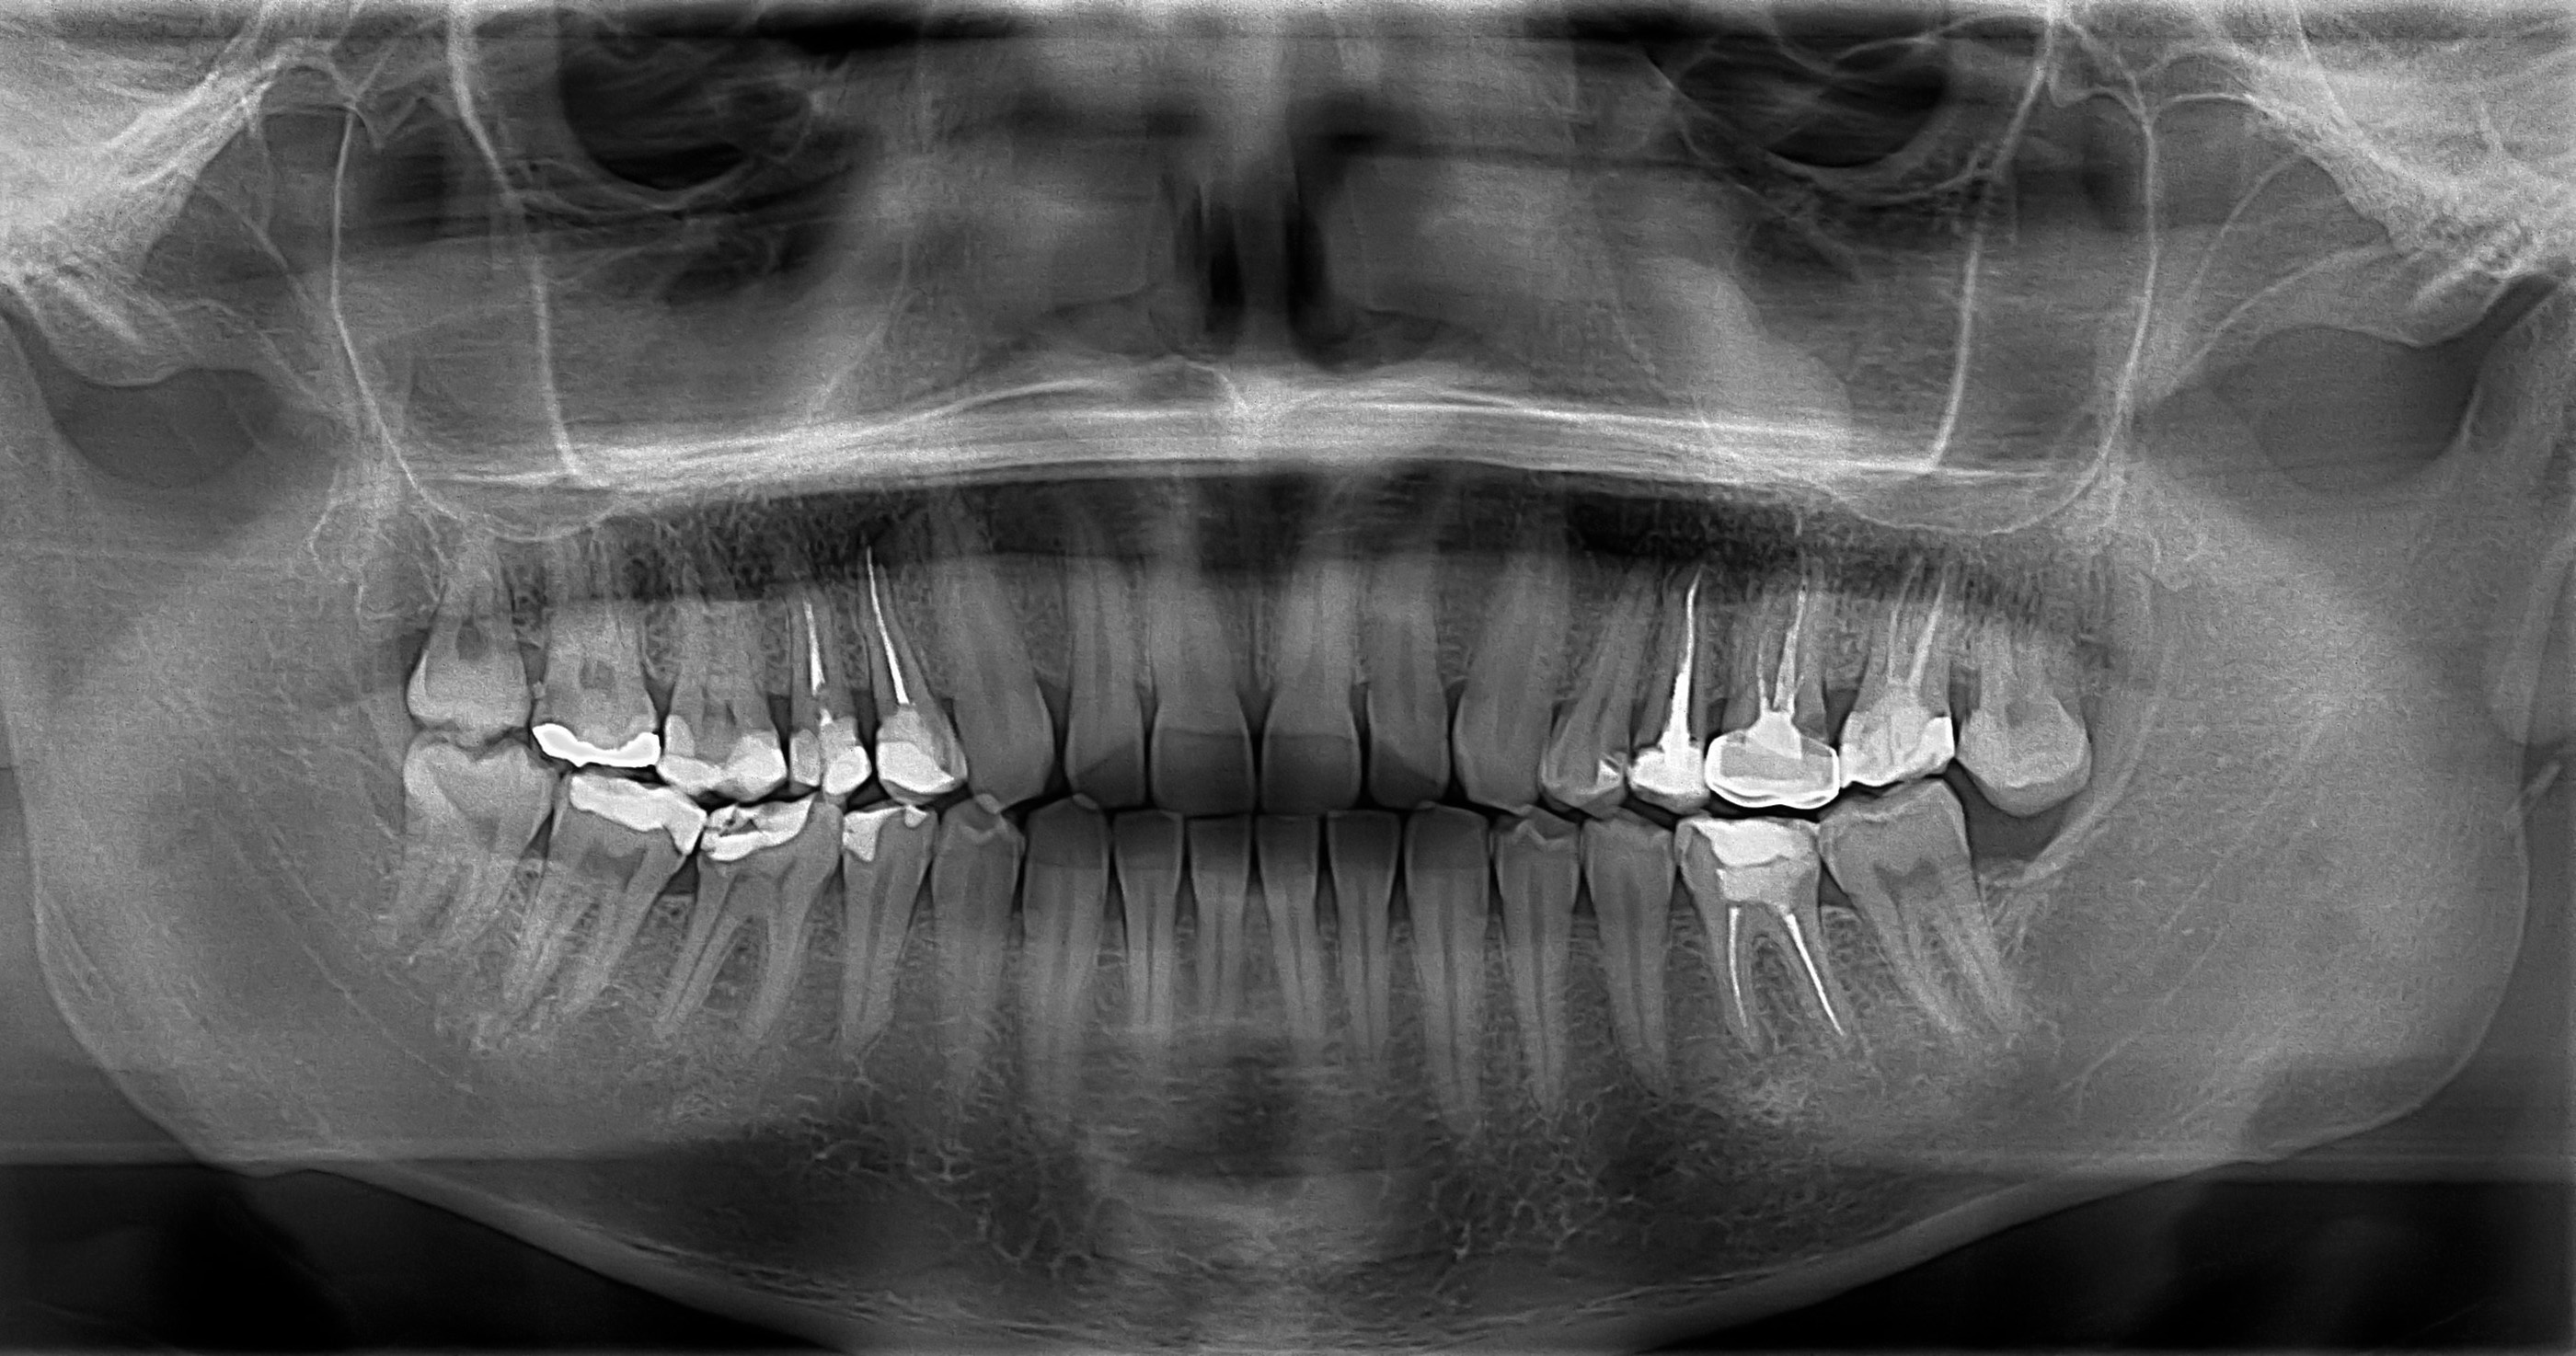 Radiografía Panorámica Dental Ortopantomografía Radiología Dental